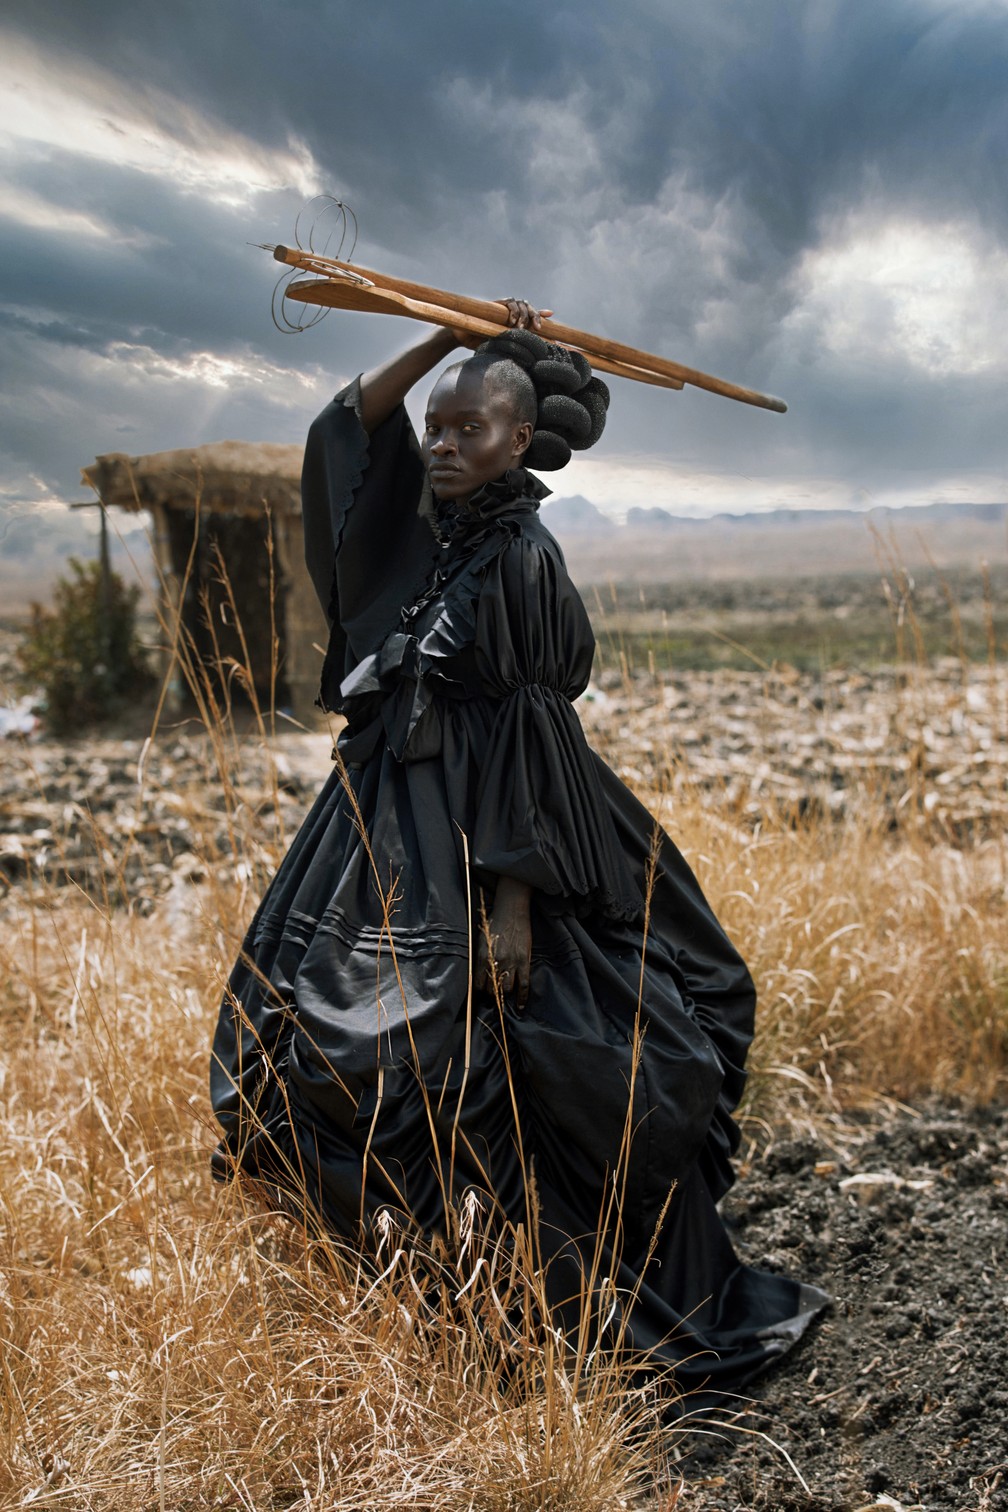 Criativo: 'African Victorian', retrato de uma jovem negra com vestido vitoriano segurando utensílios tradicionais Shona — Foto: Tamary Kudita (Zimbábue)/Sony World Photography Awards